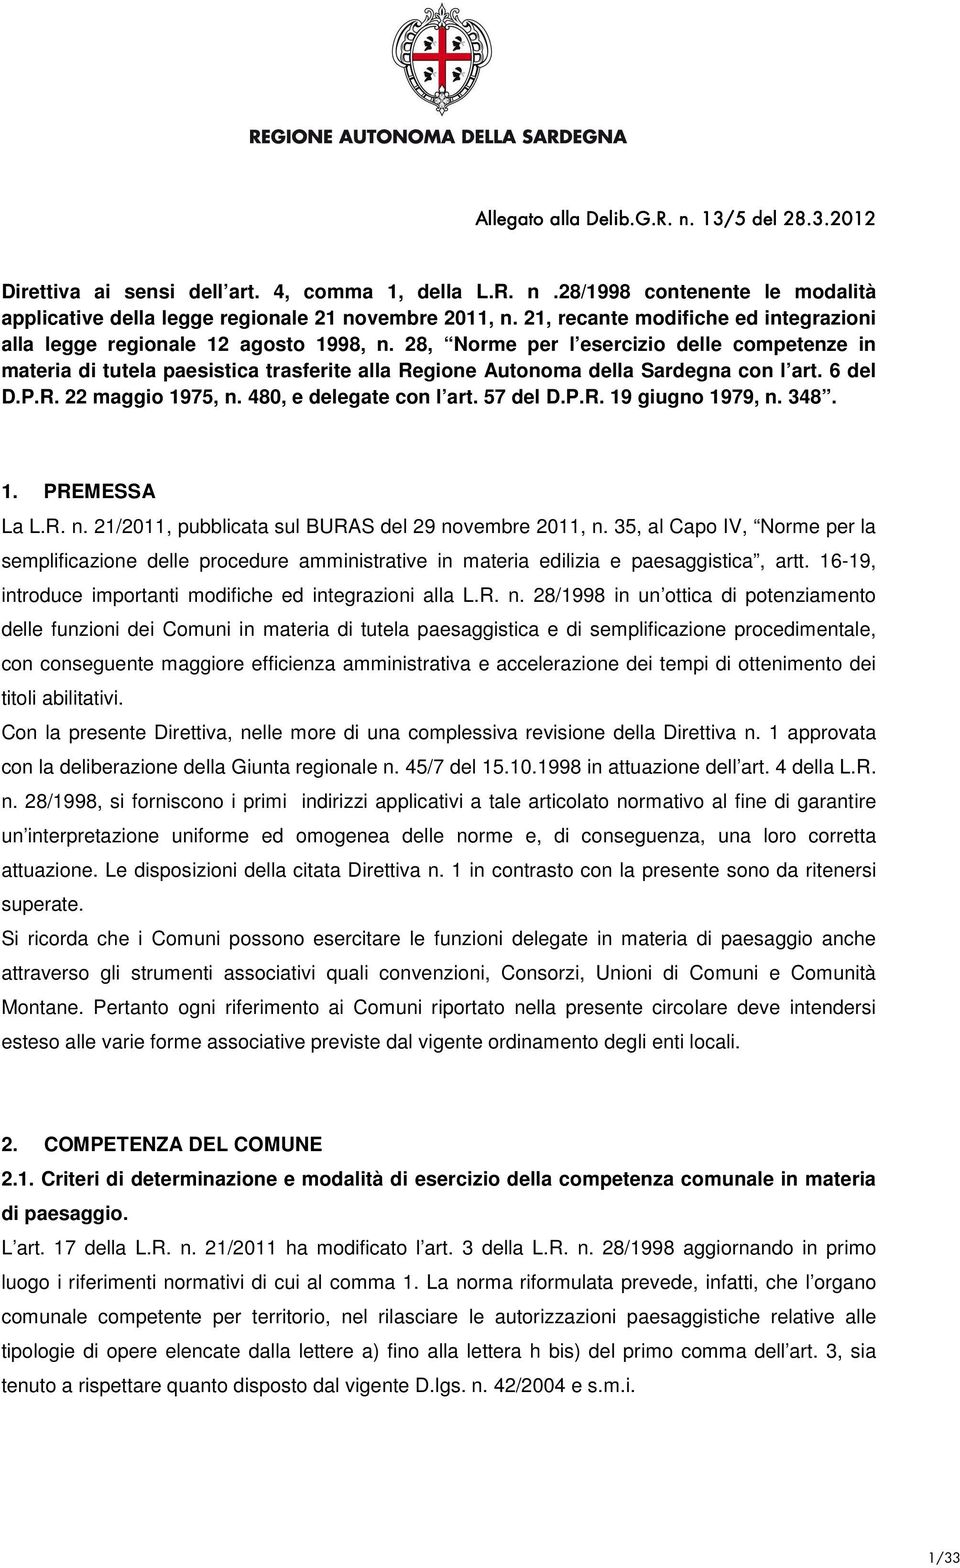 28, Norme per l esercizio delle competenze in materia di tutela paesistica trasferite alla Regione Autonoma della Sardegna con l art. 6 del D.P.R. 22 maggio 1975, n. 480, e delegate con l art.